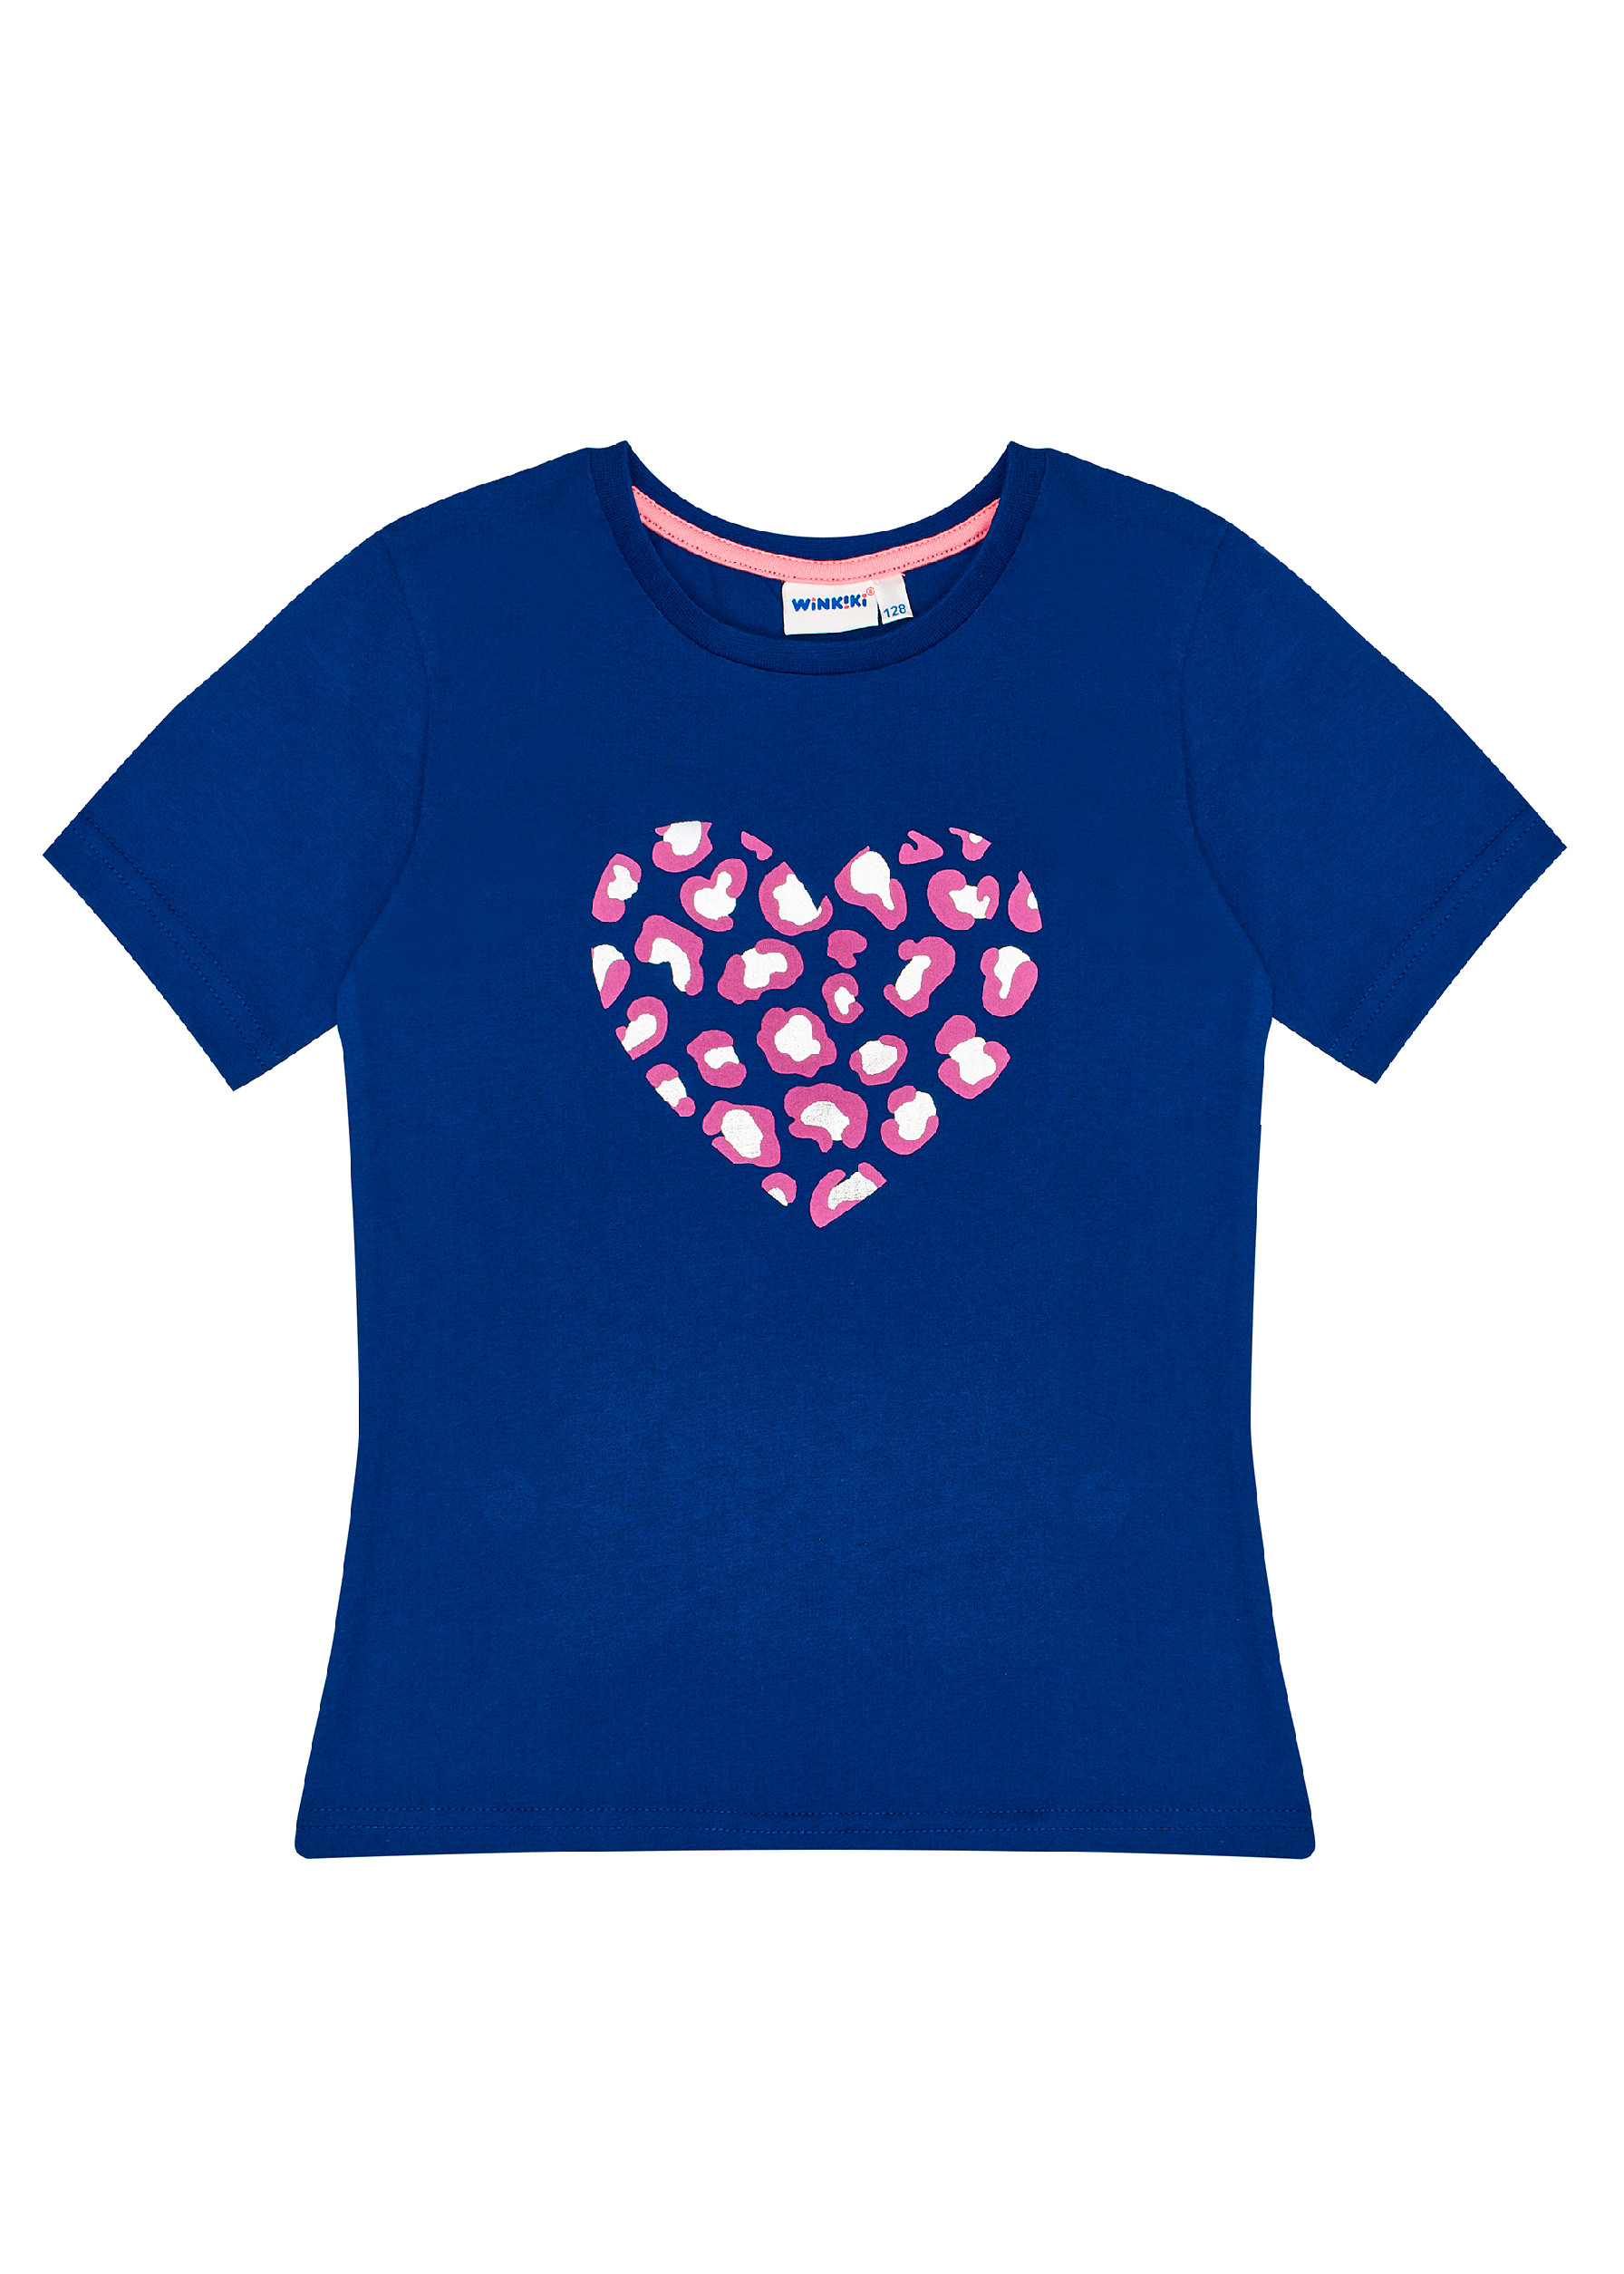 Dívčí tričko - Winkiki WJG 91407, tmavě modrá Barva: Modrá tmavě, Velikost: 146